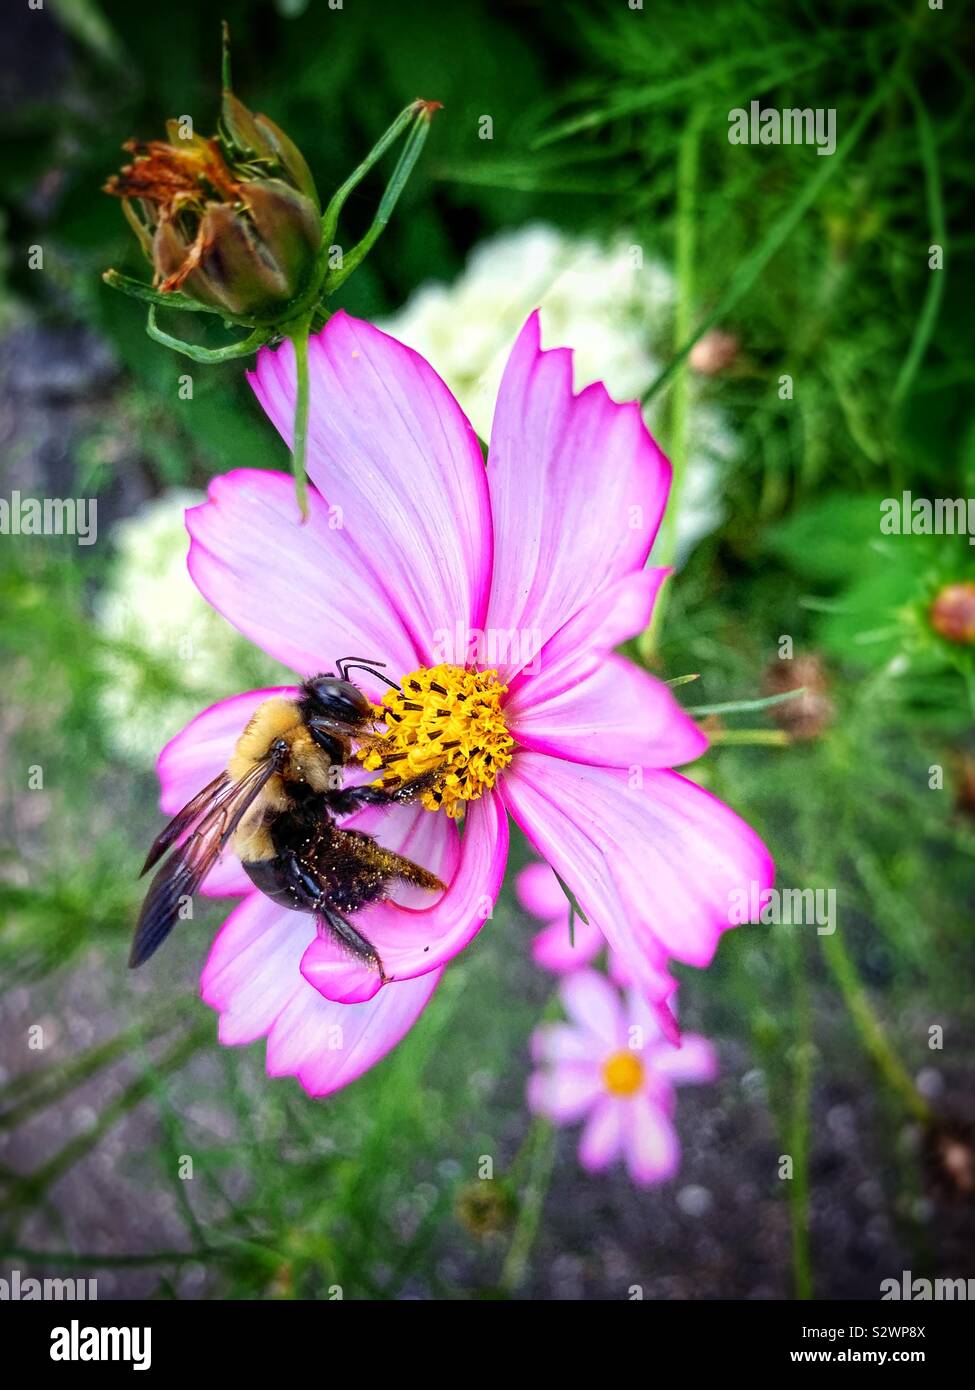 Bubble bee dans cosmos flower in garden Banque D'Images